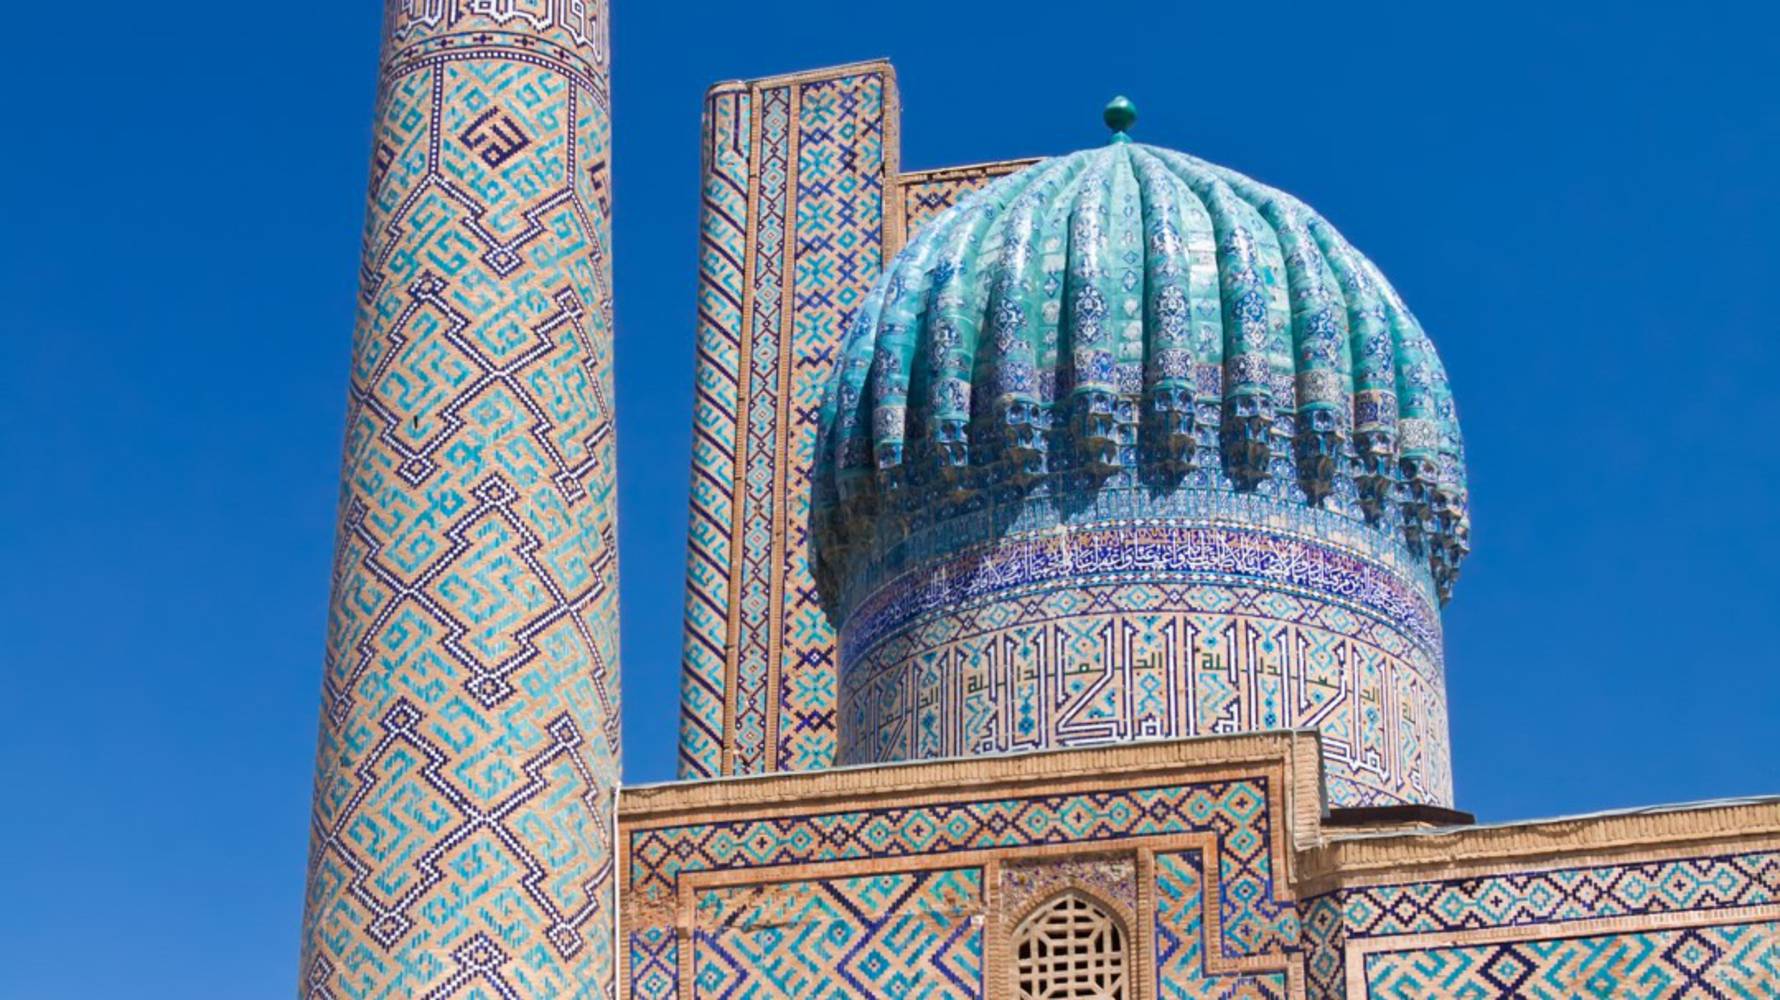 Samarkand_-_shutterstock_133196468_(Large)